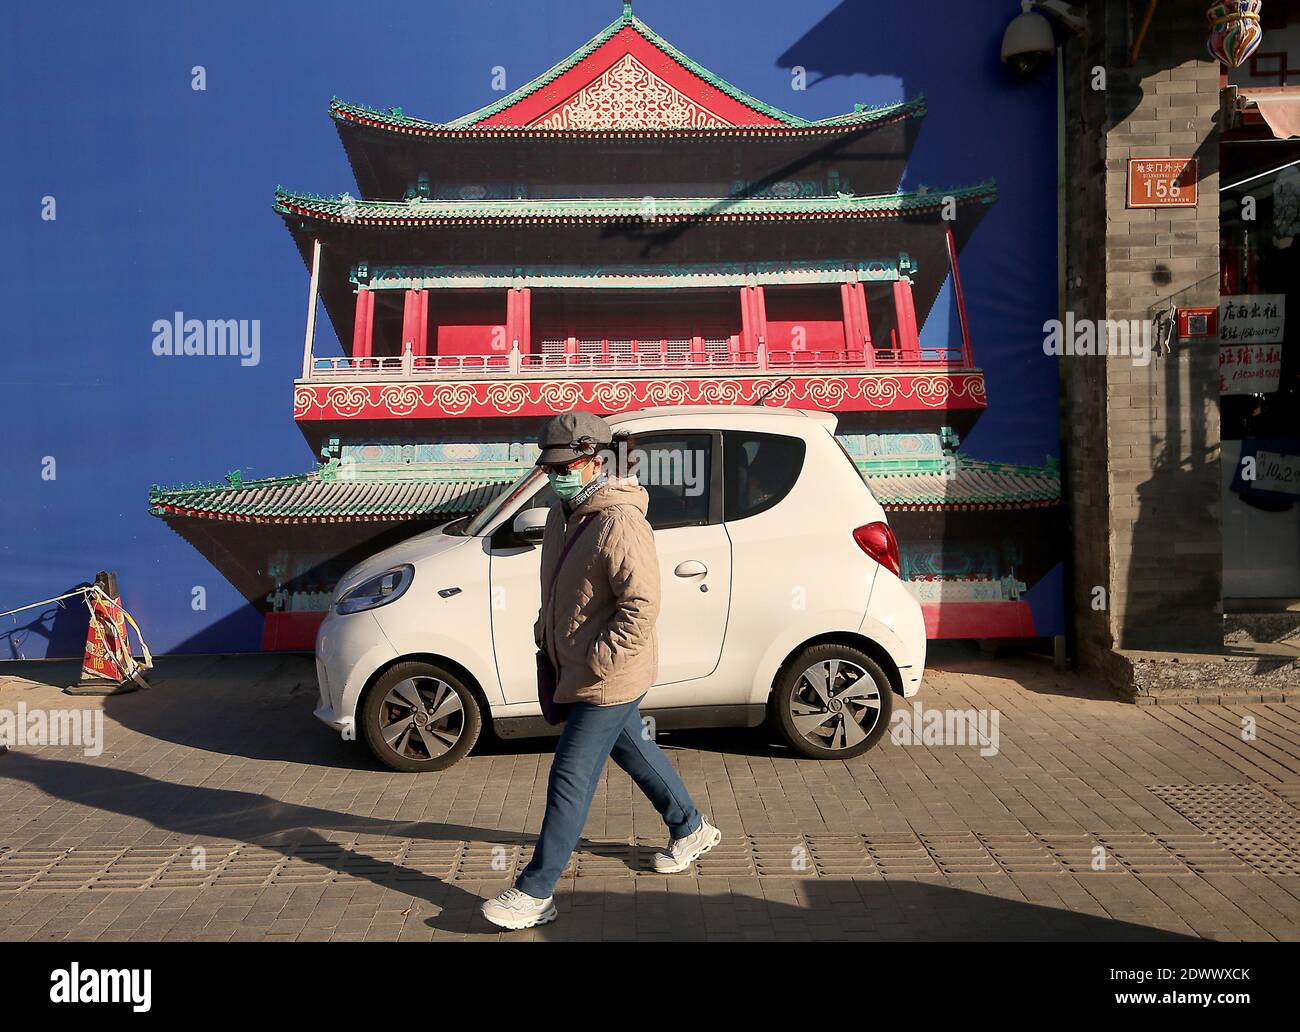 Pechino, Cina. 23 dicembre 2020. Una piccola auto elettrica è parcheggiata di fronte a un cantiere a Pechino mercoledì 23 dicembre 2020. Le case automobilistiche cinesi hanno iniziato a designare un gruppo di mercato chiave ed emergente nel mercato automobilistico massiccio del paese - i pendolari giovani e urbani che non hanno stipendi grandi e capiscono le sfide di trovare i parcheggi. Foto di Stephen Shaver/UPI Credit: UPI/Alamy Live News Foto Stock